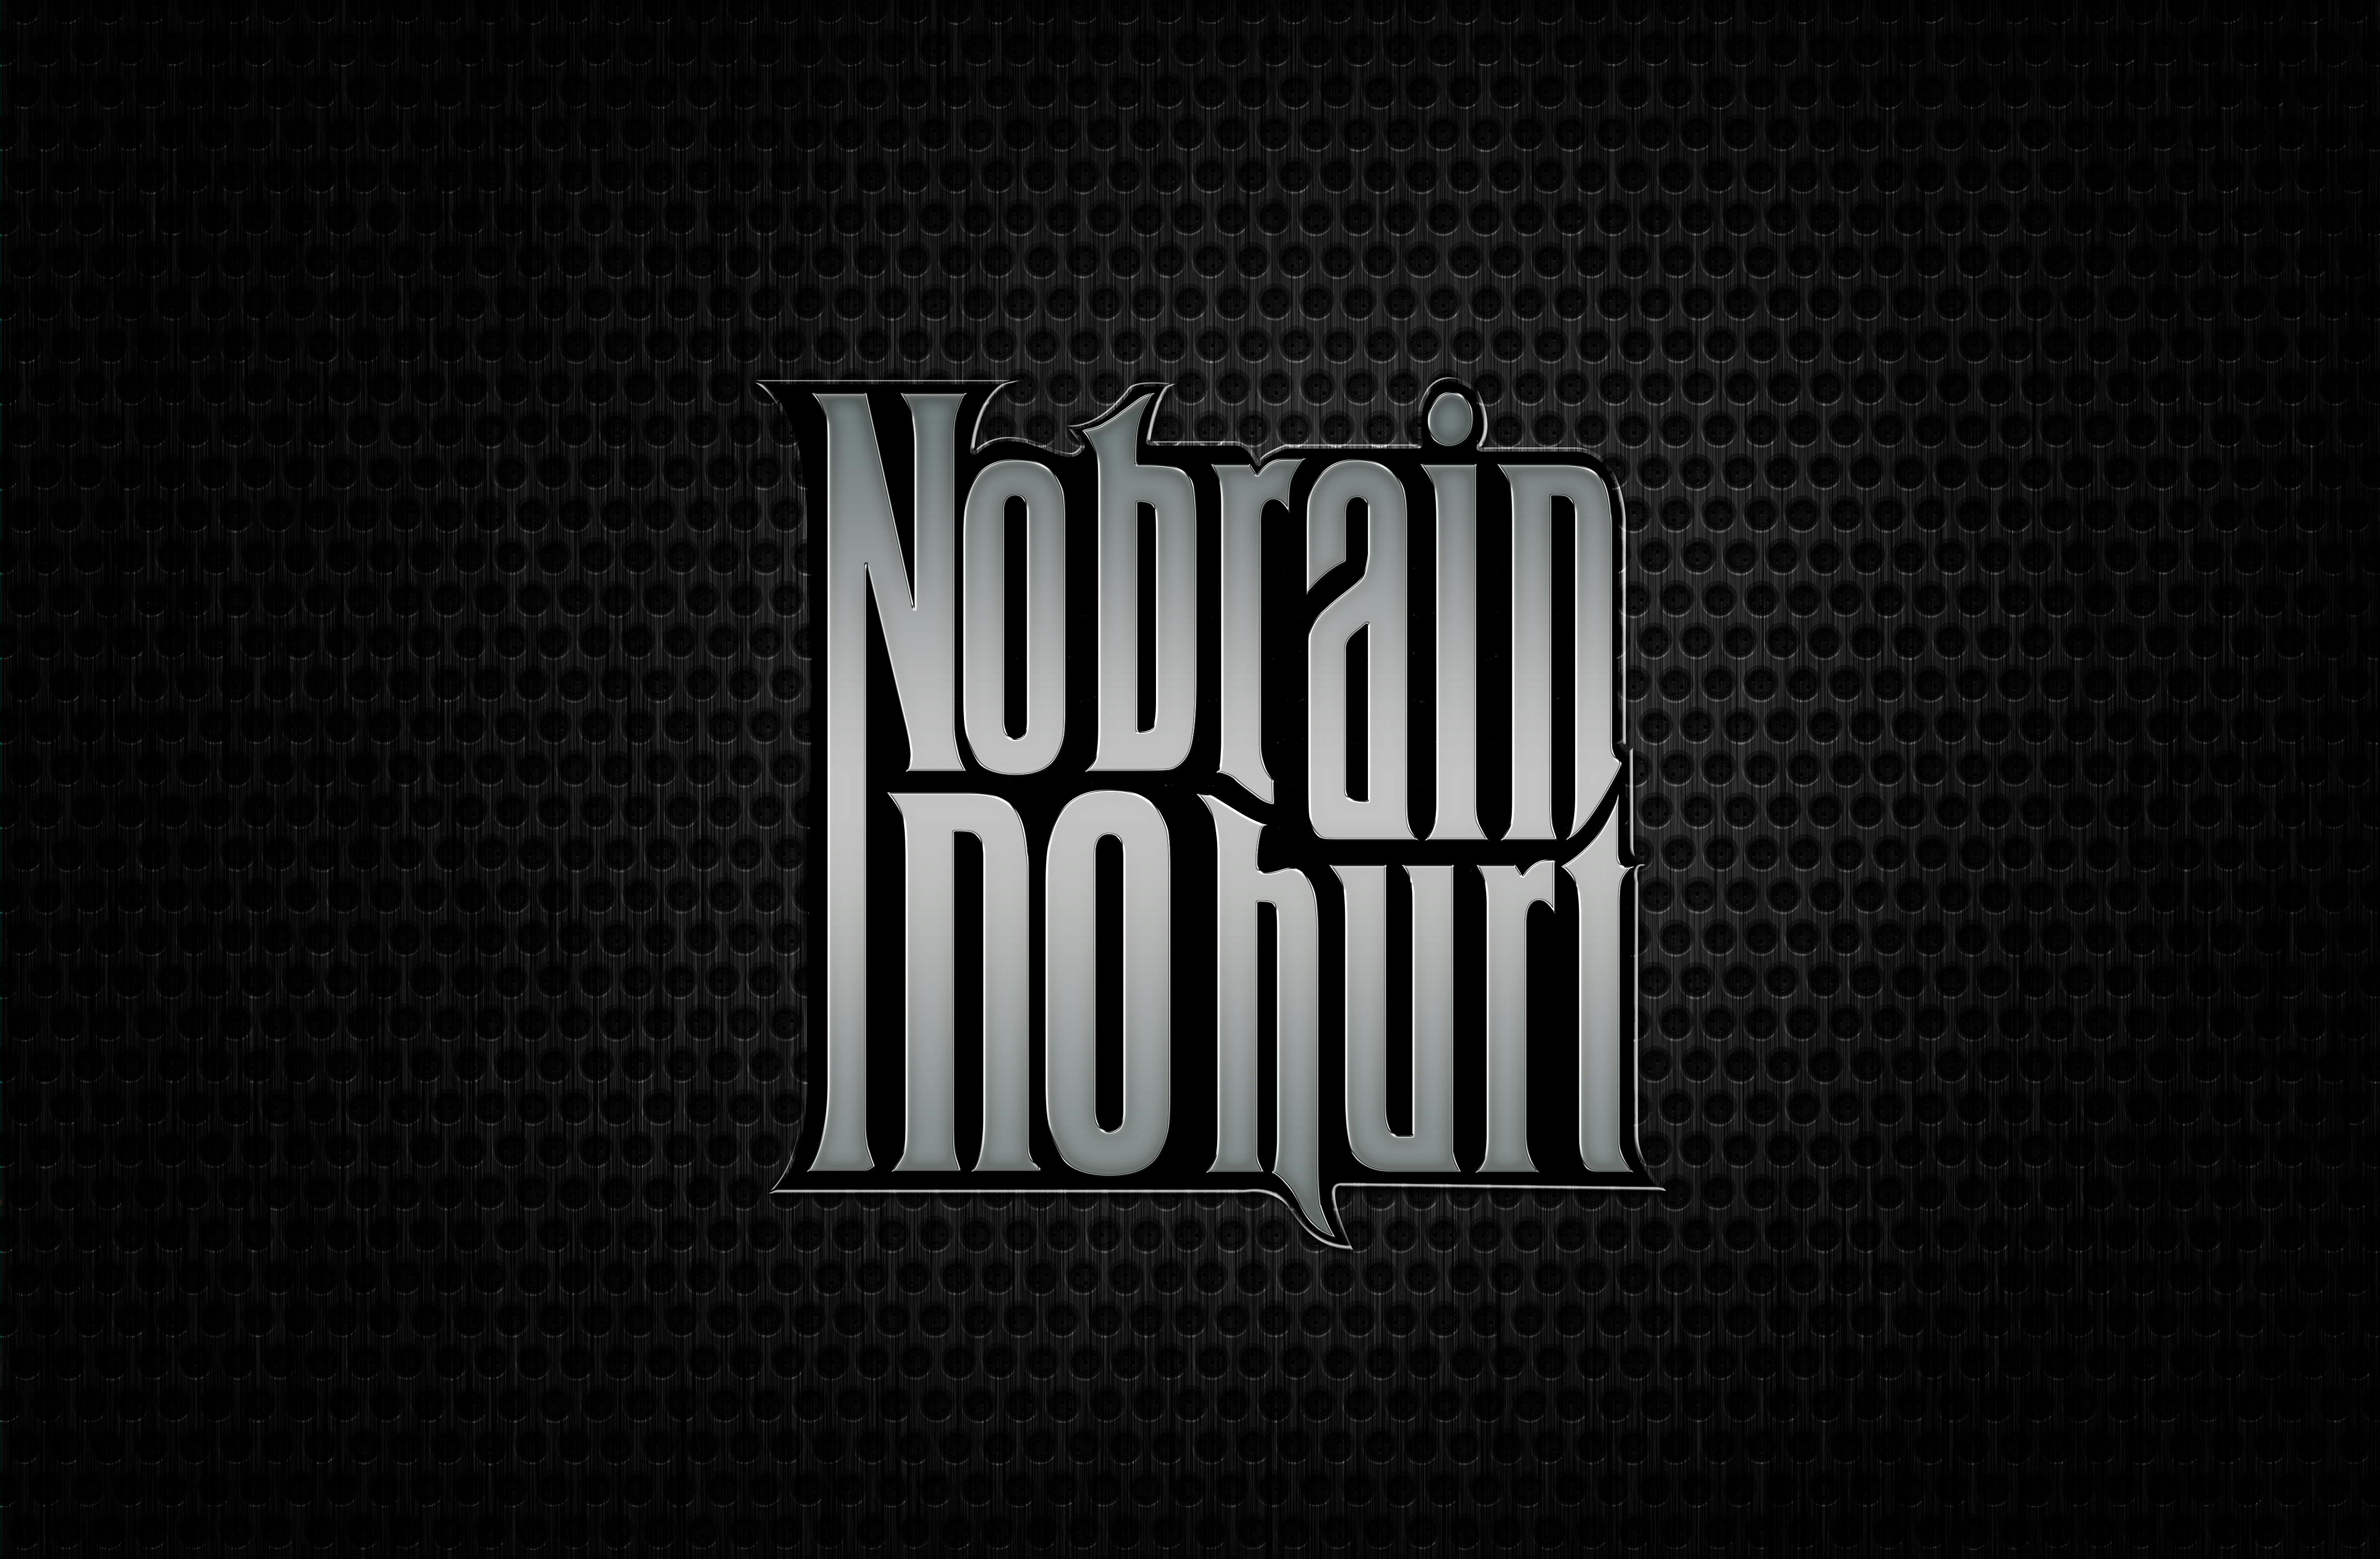 Free stock photo of No Brain no Hurt - Love